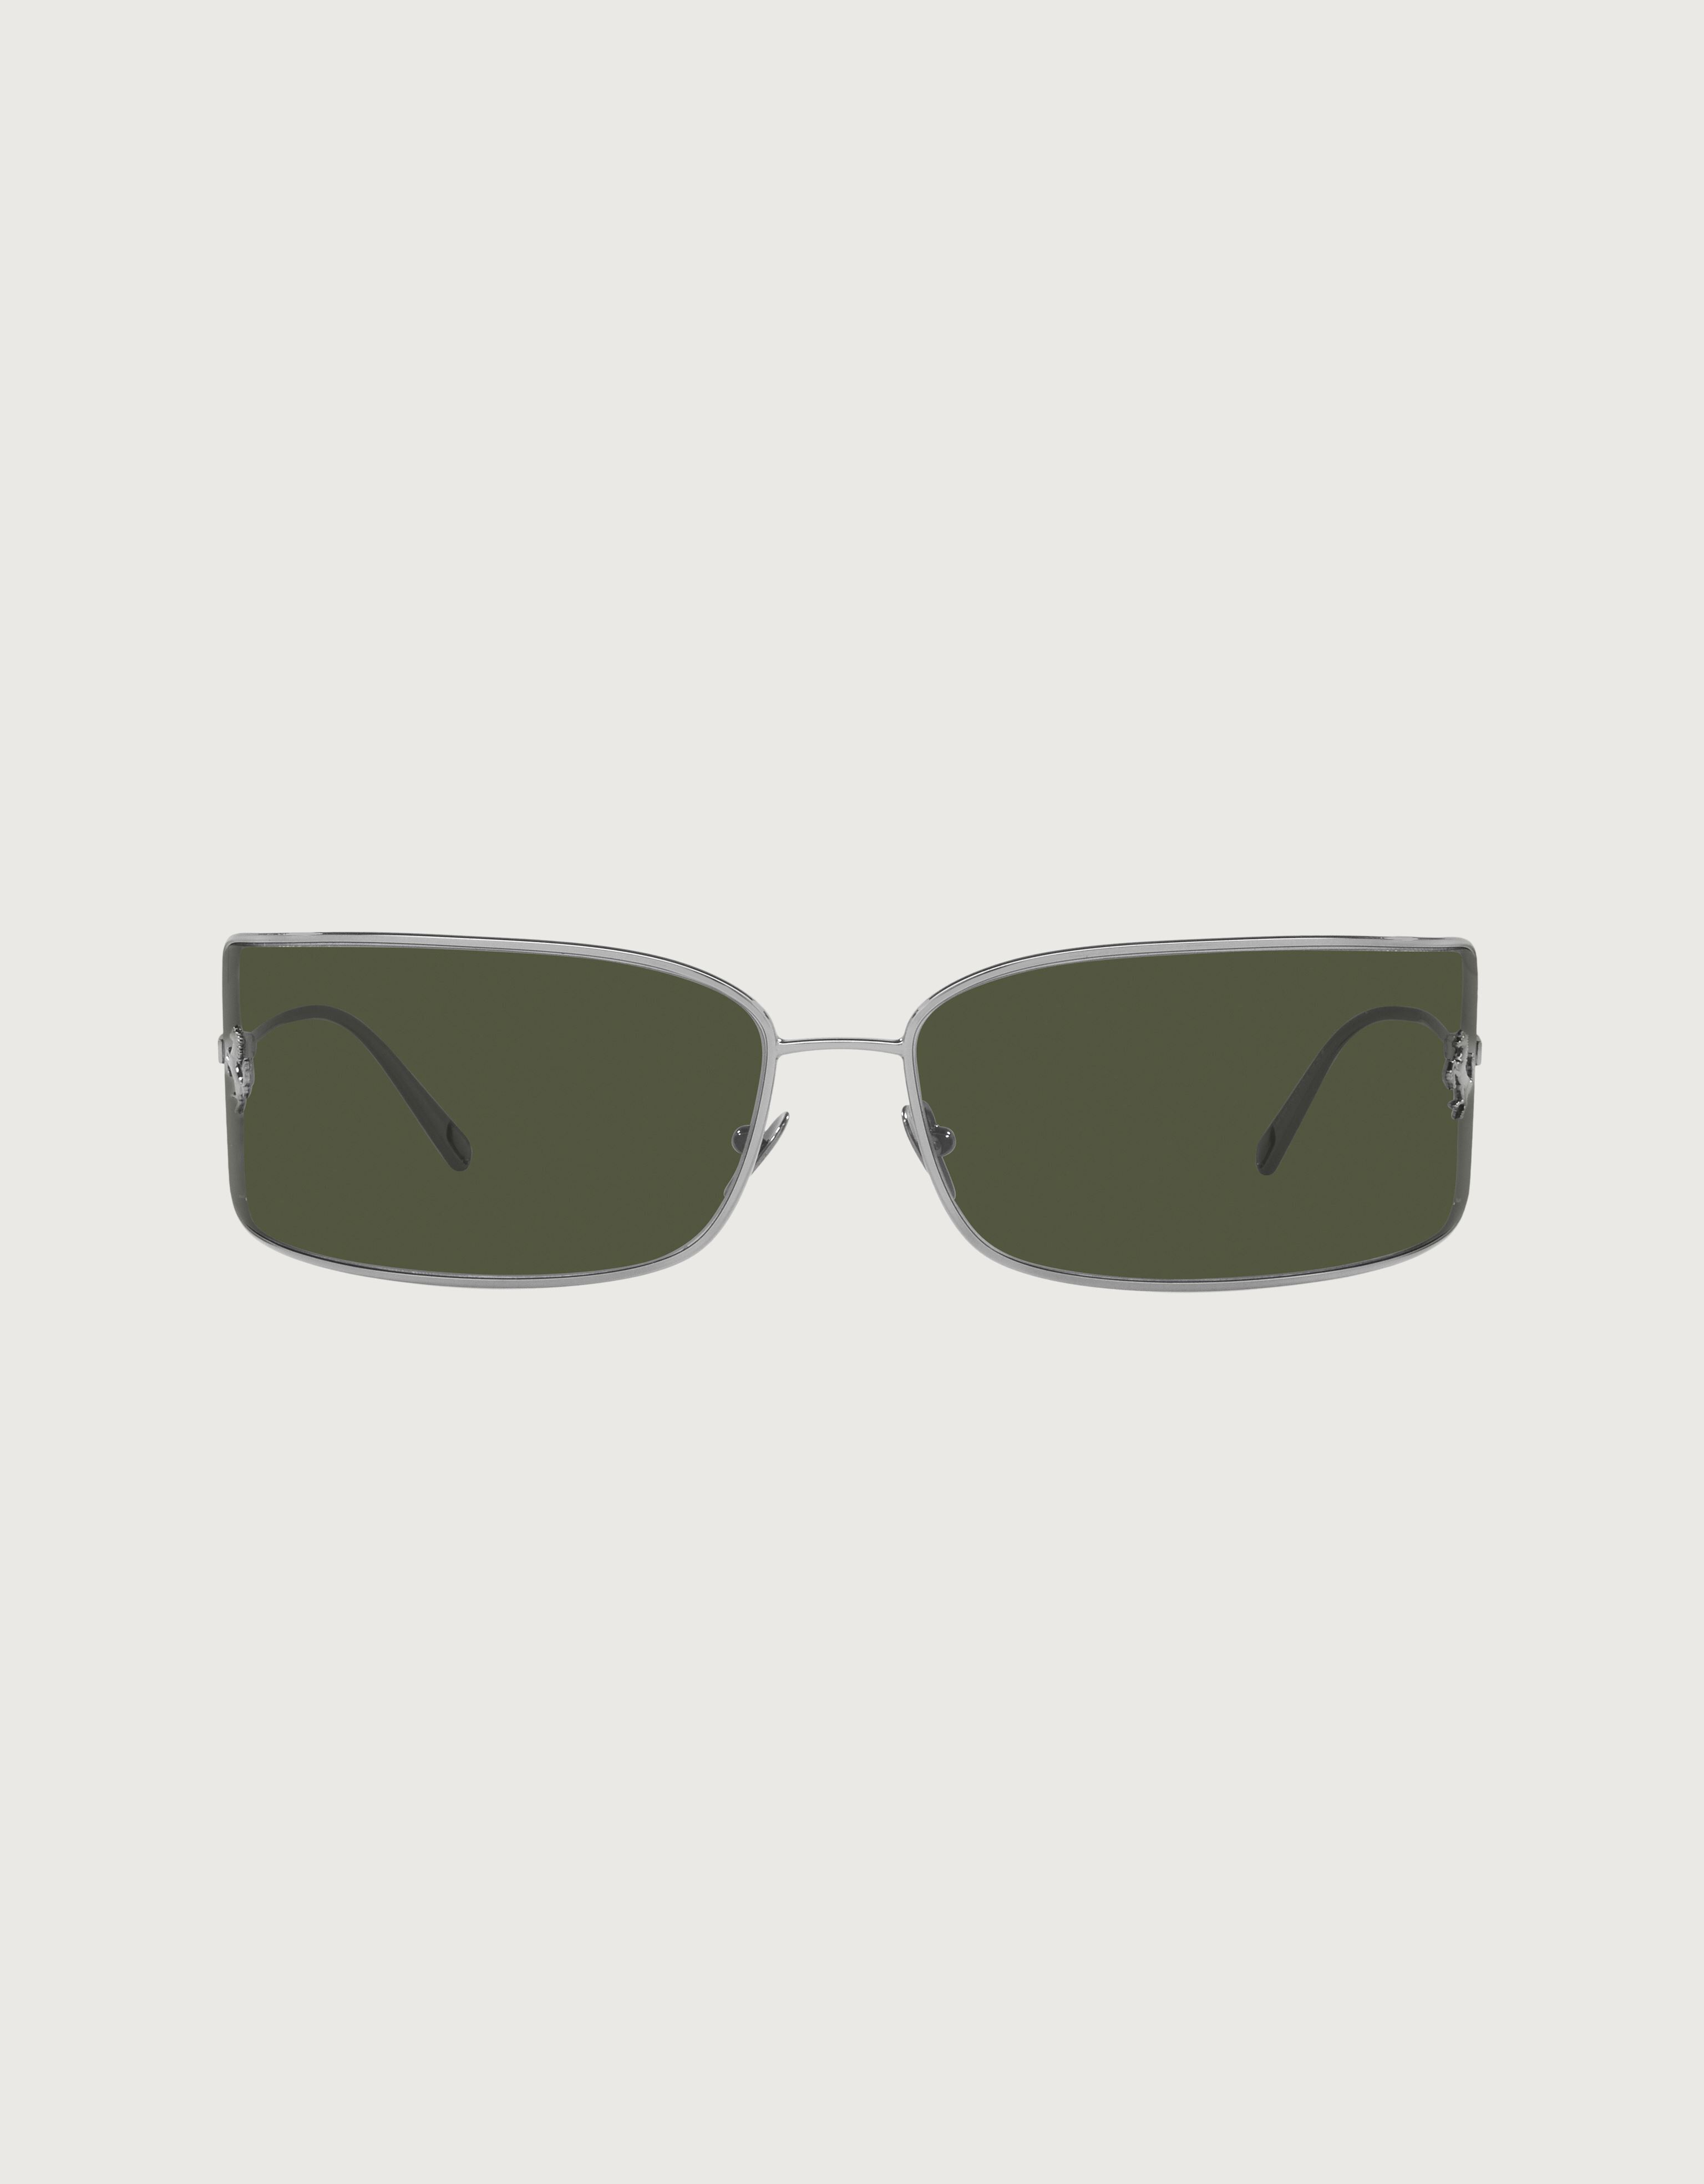 Ferrari Ferrari shield sunglasses with green lenses Black Matt F1251f